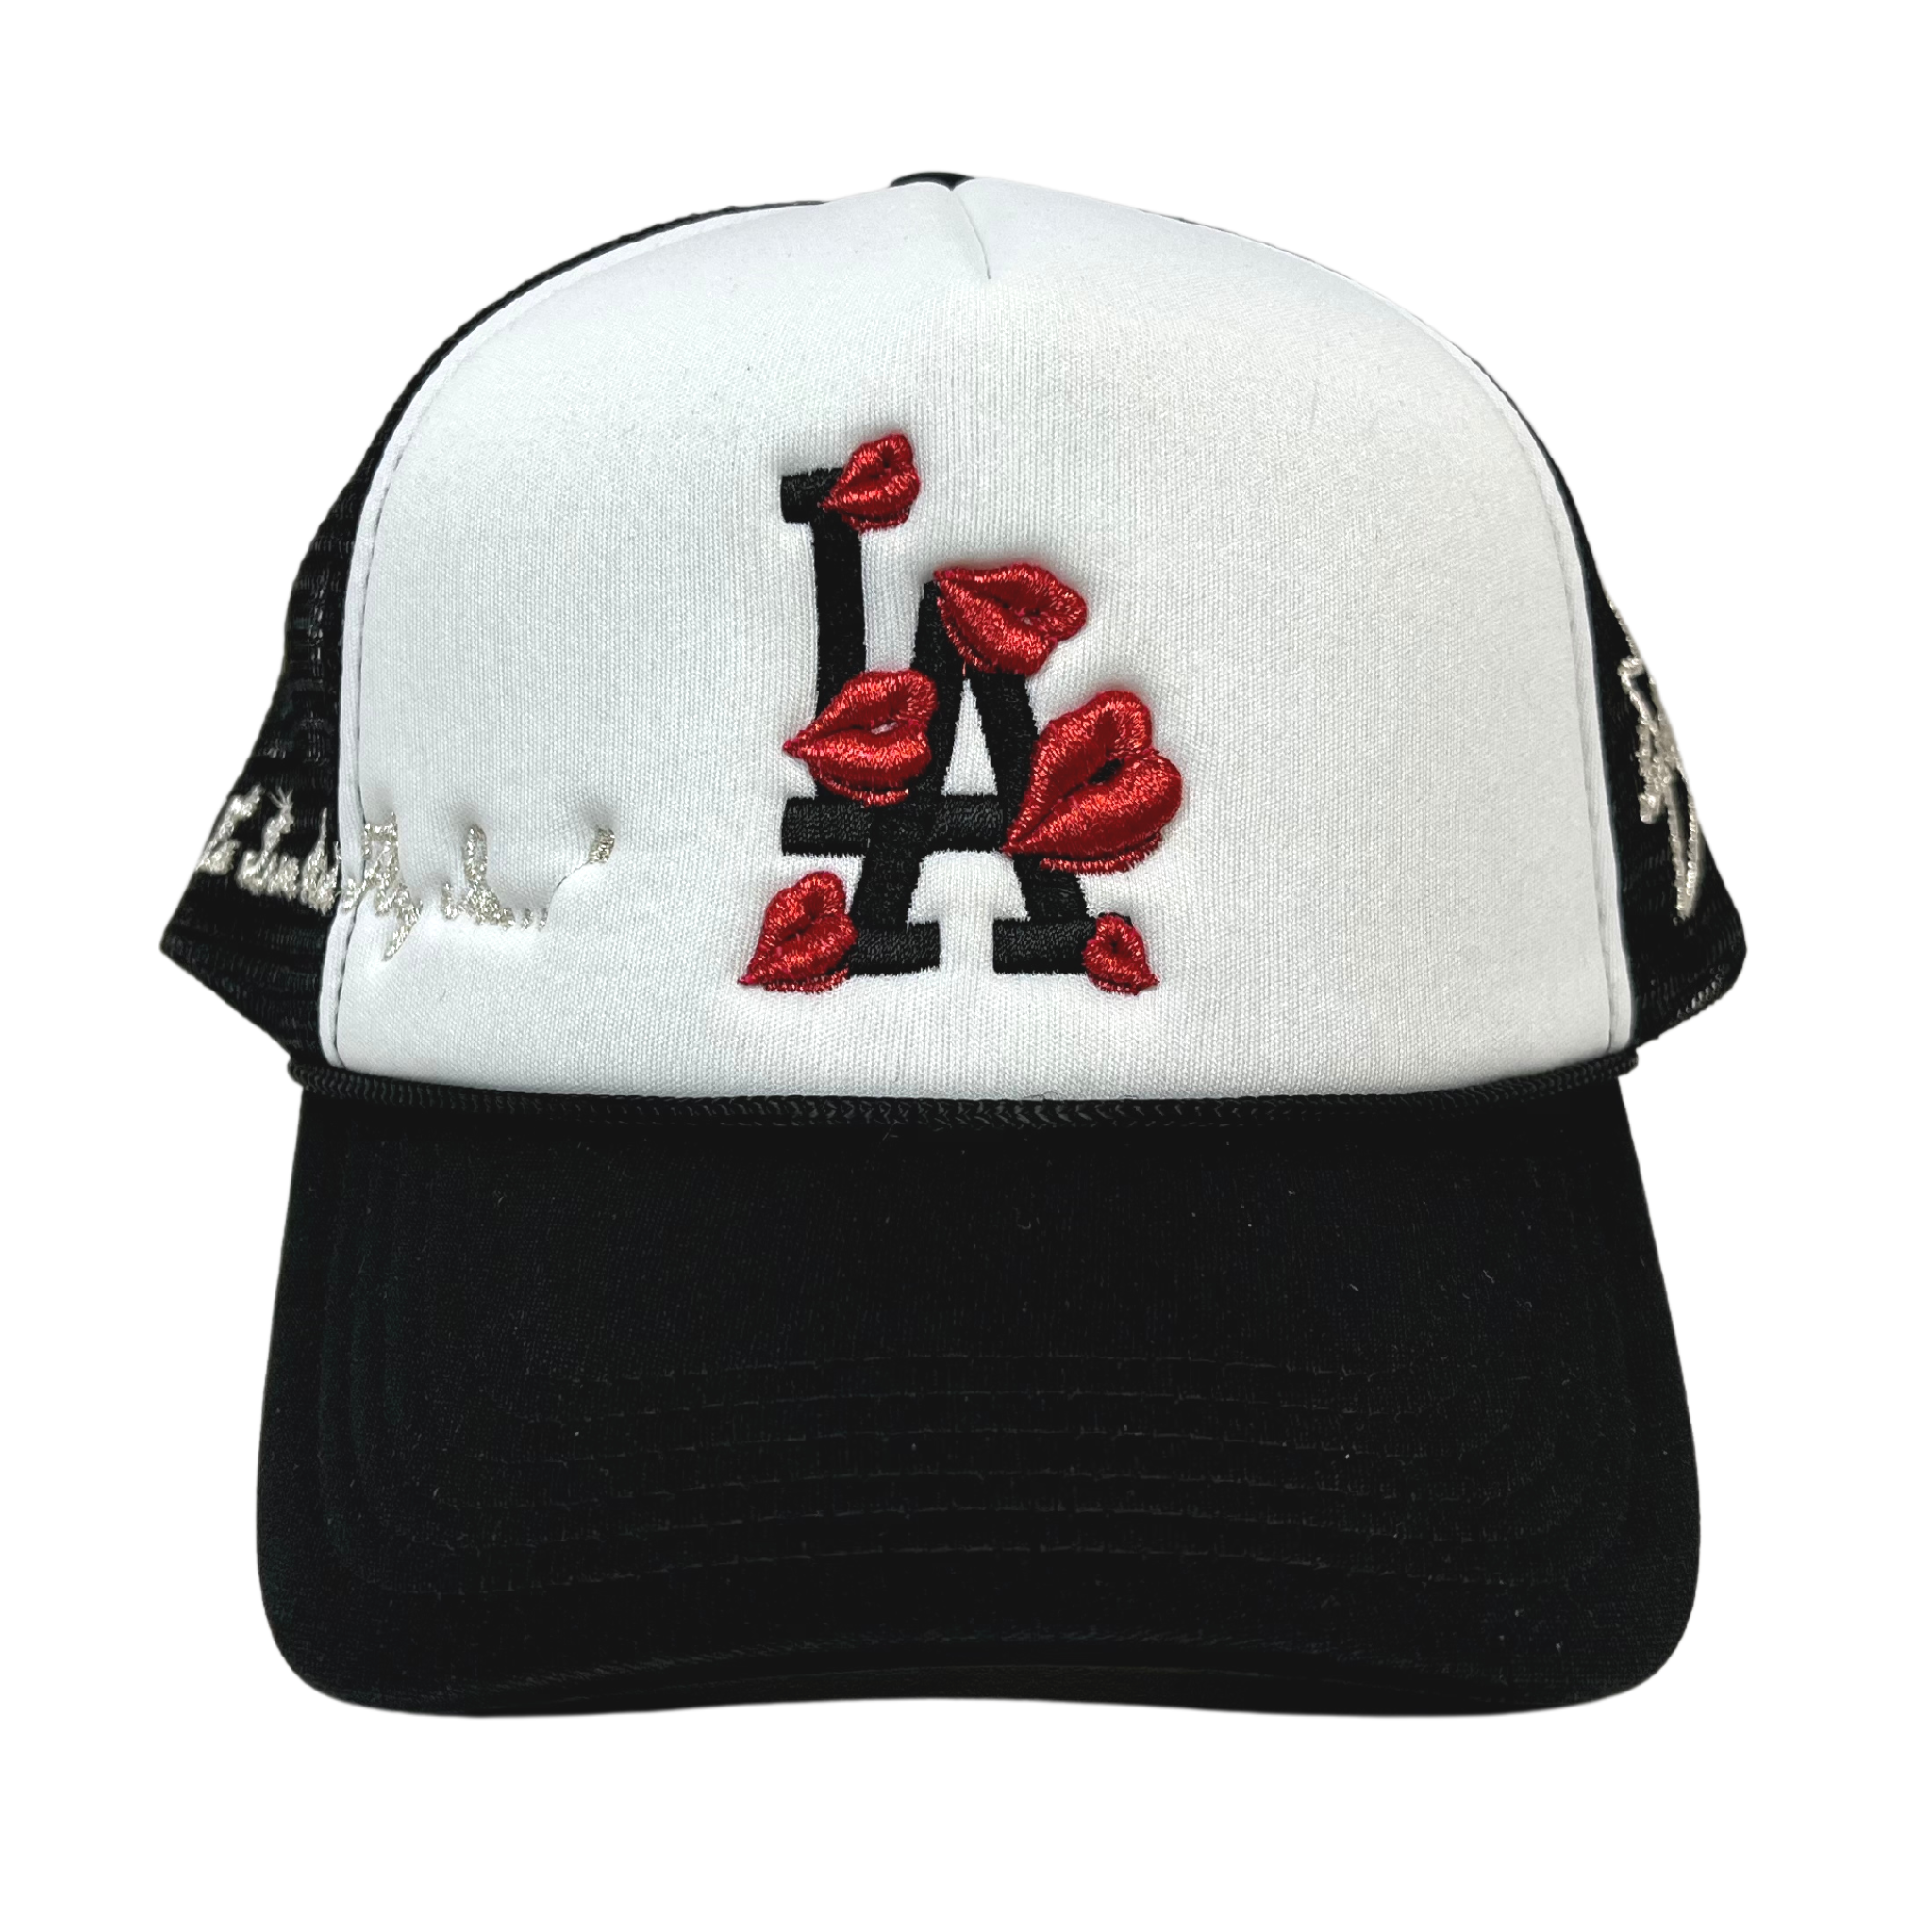 Hat La Ropa Black size M International in Cotton - 23520615